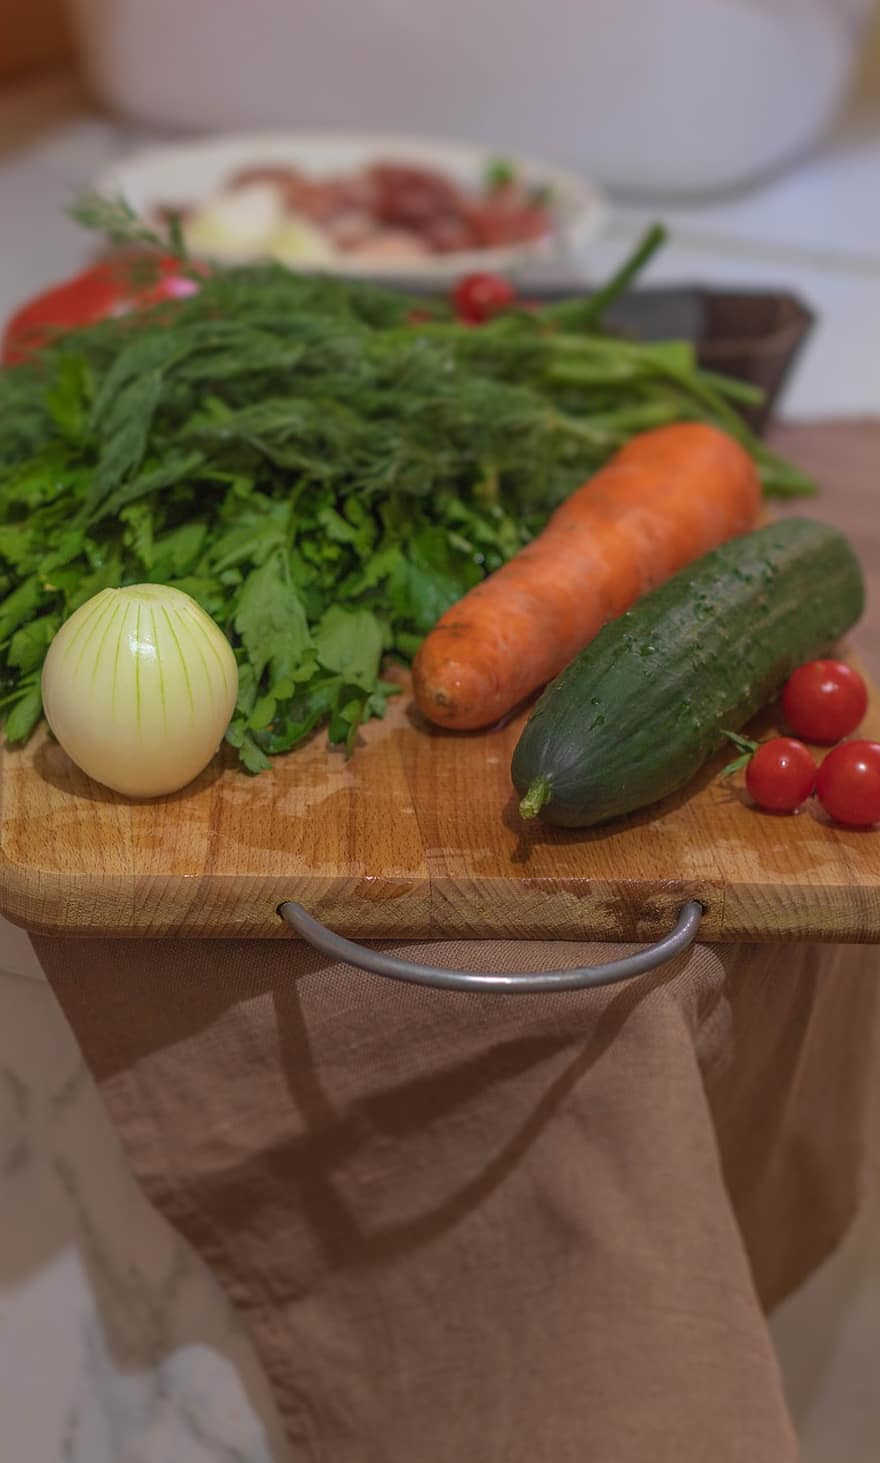 grøntsager, tomater, agurk, gulerod, persille, løg, skrællet, mad, laver mad, ingredienser, bord